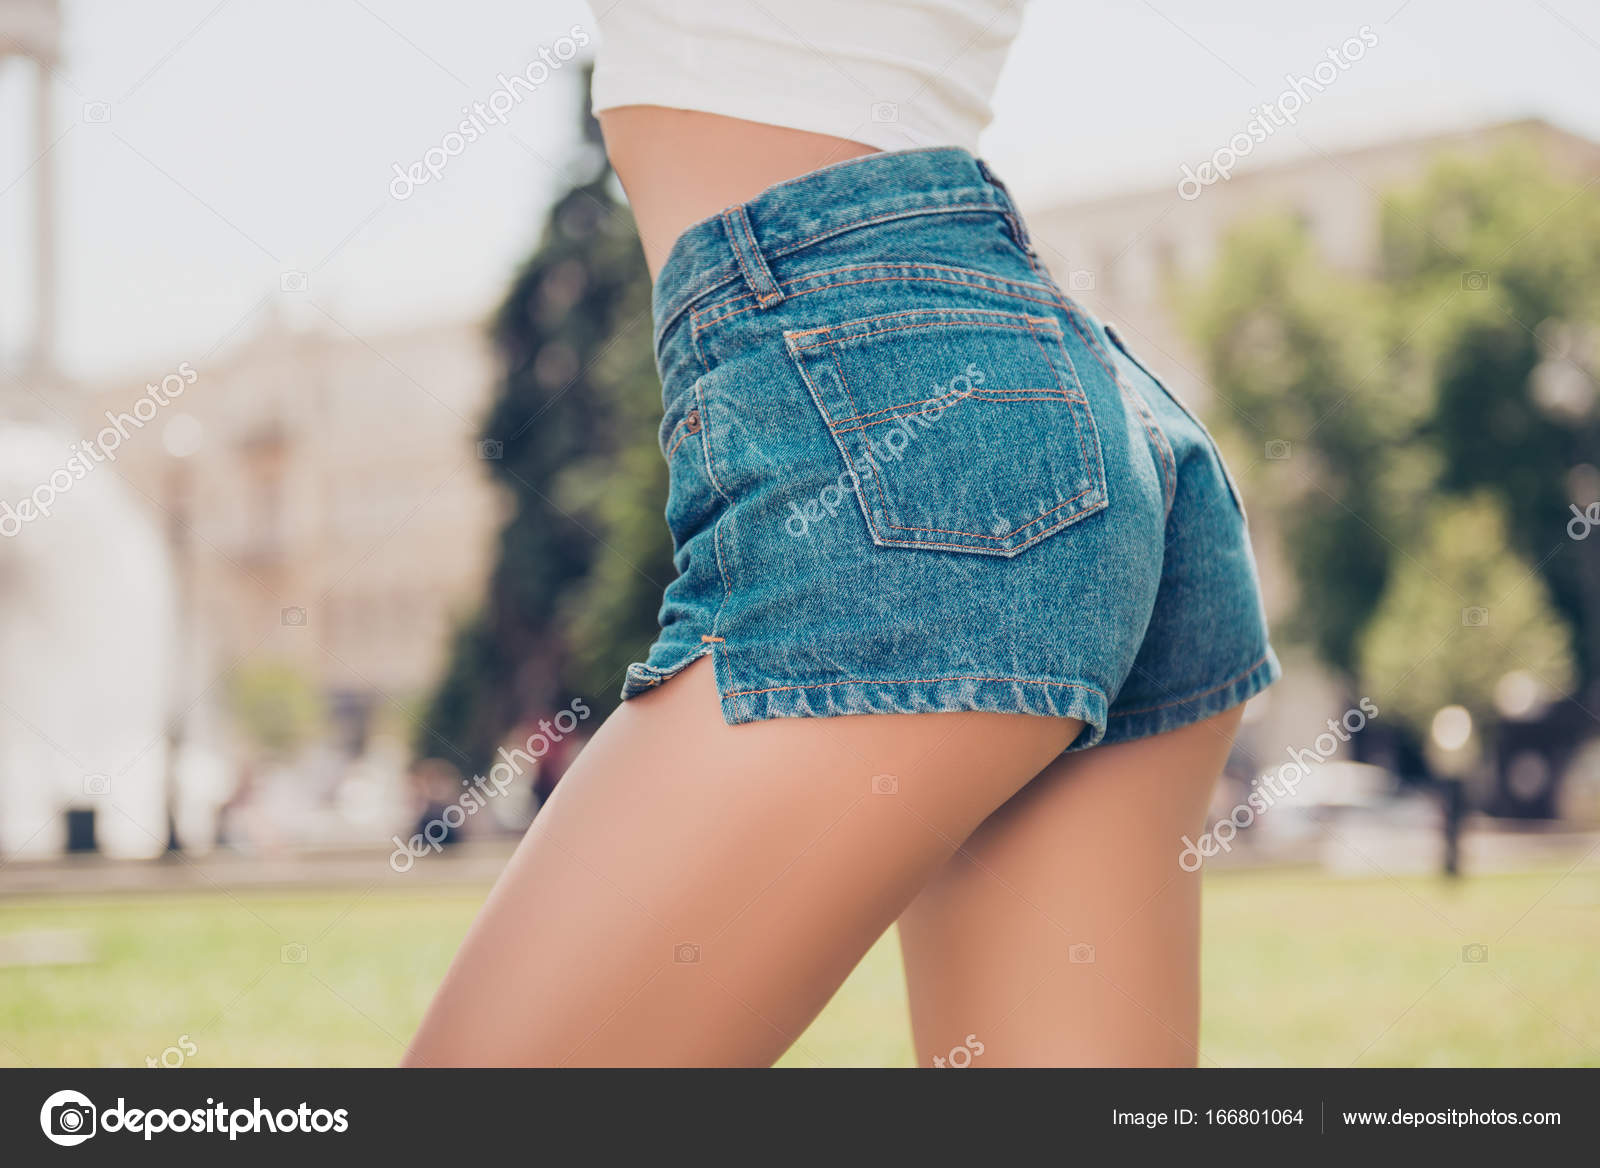 short girls nice tight ass sex pics